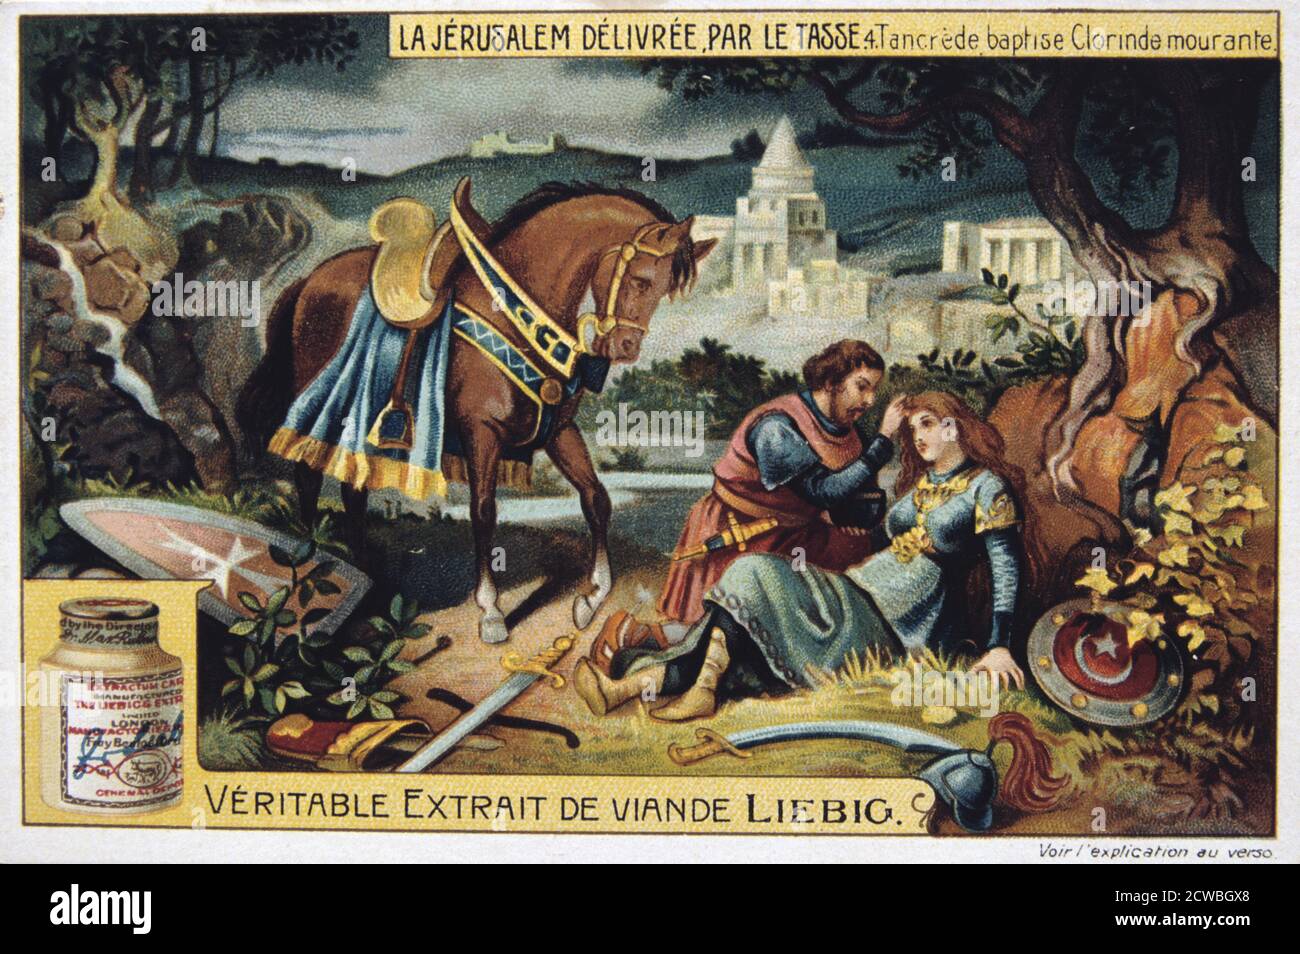 La Jerusalem deliveree par le Tasse, Tancrede baptises the dying Clorinde. 19th Century. Colour Lithograph. Private collection. Stock Photo